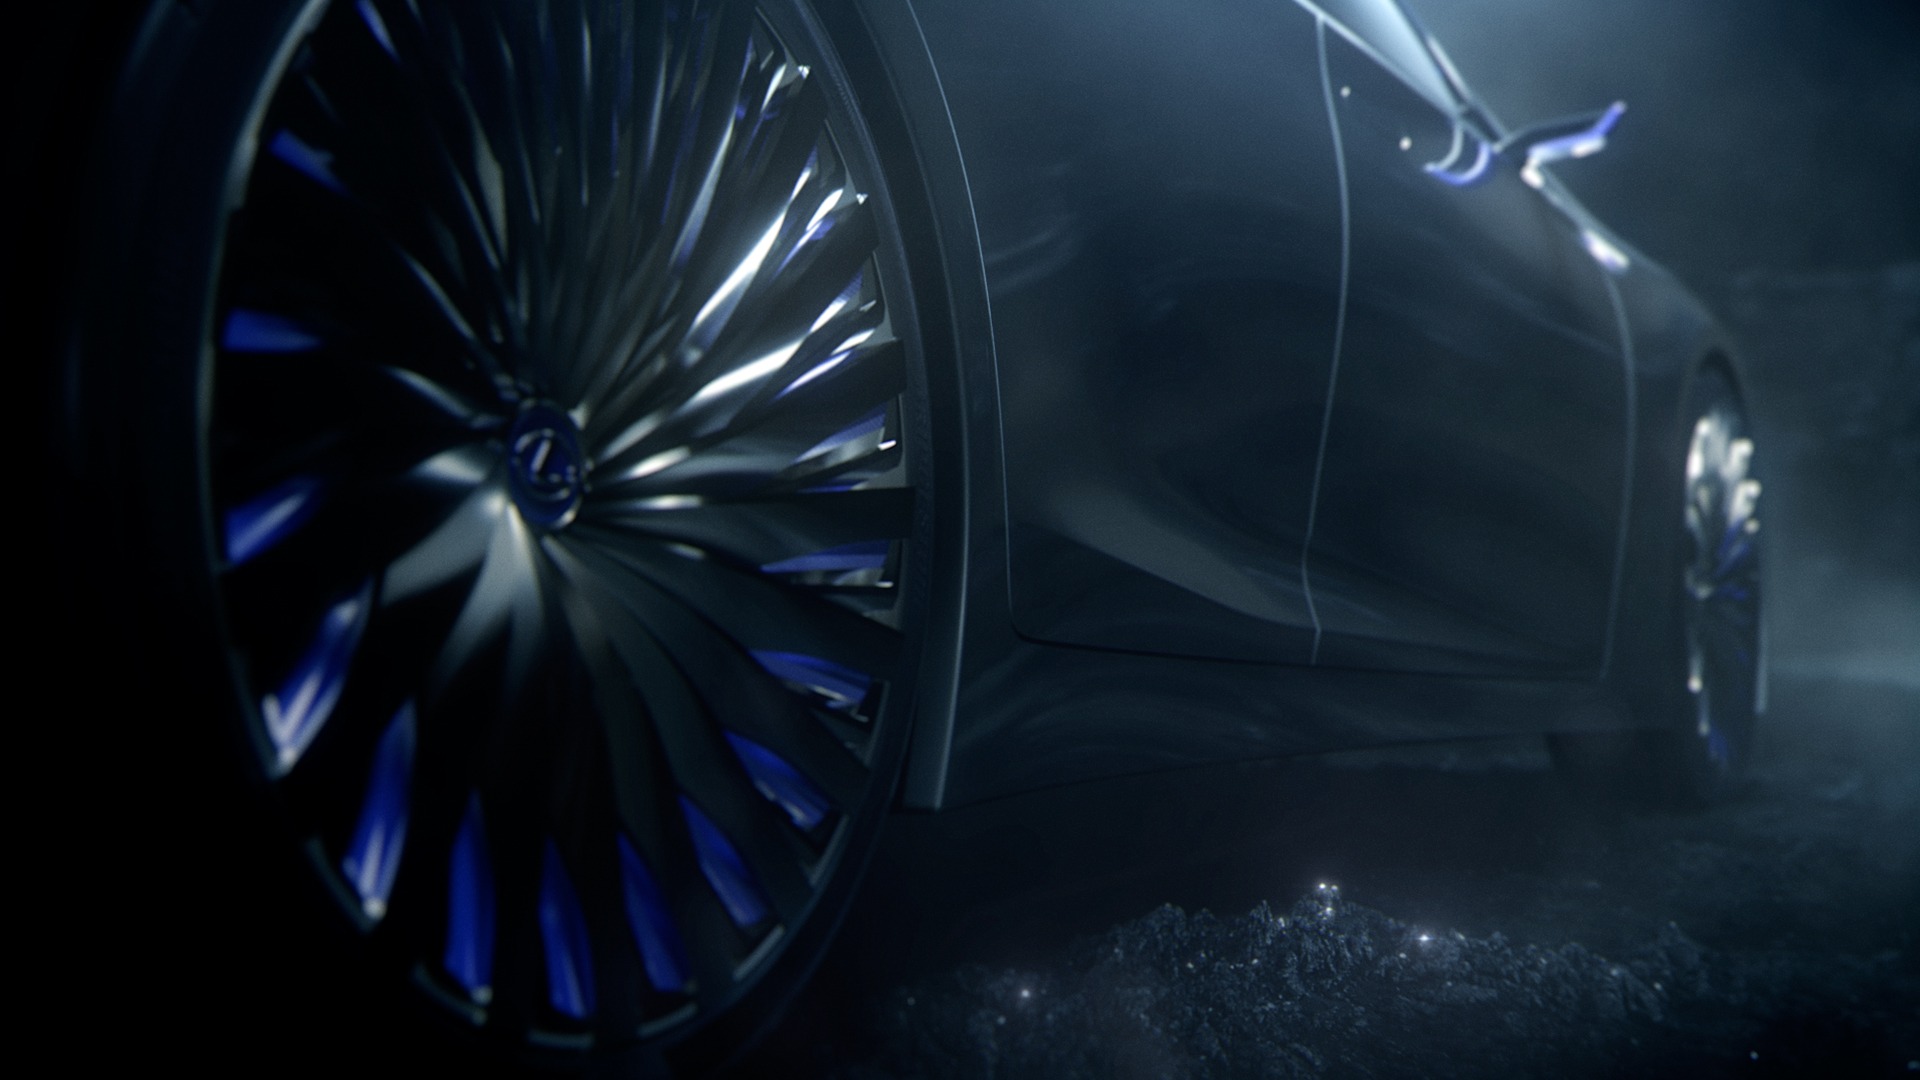 Lexus Fuel Cell Concept